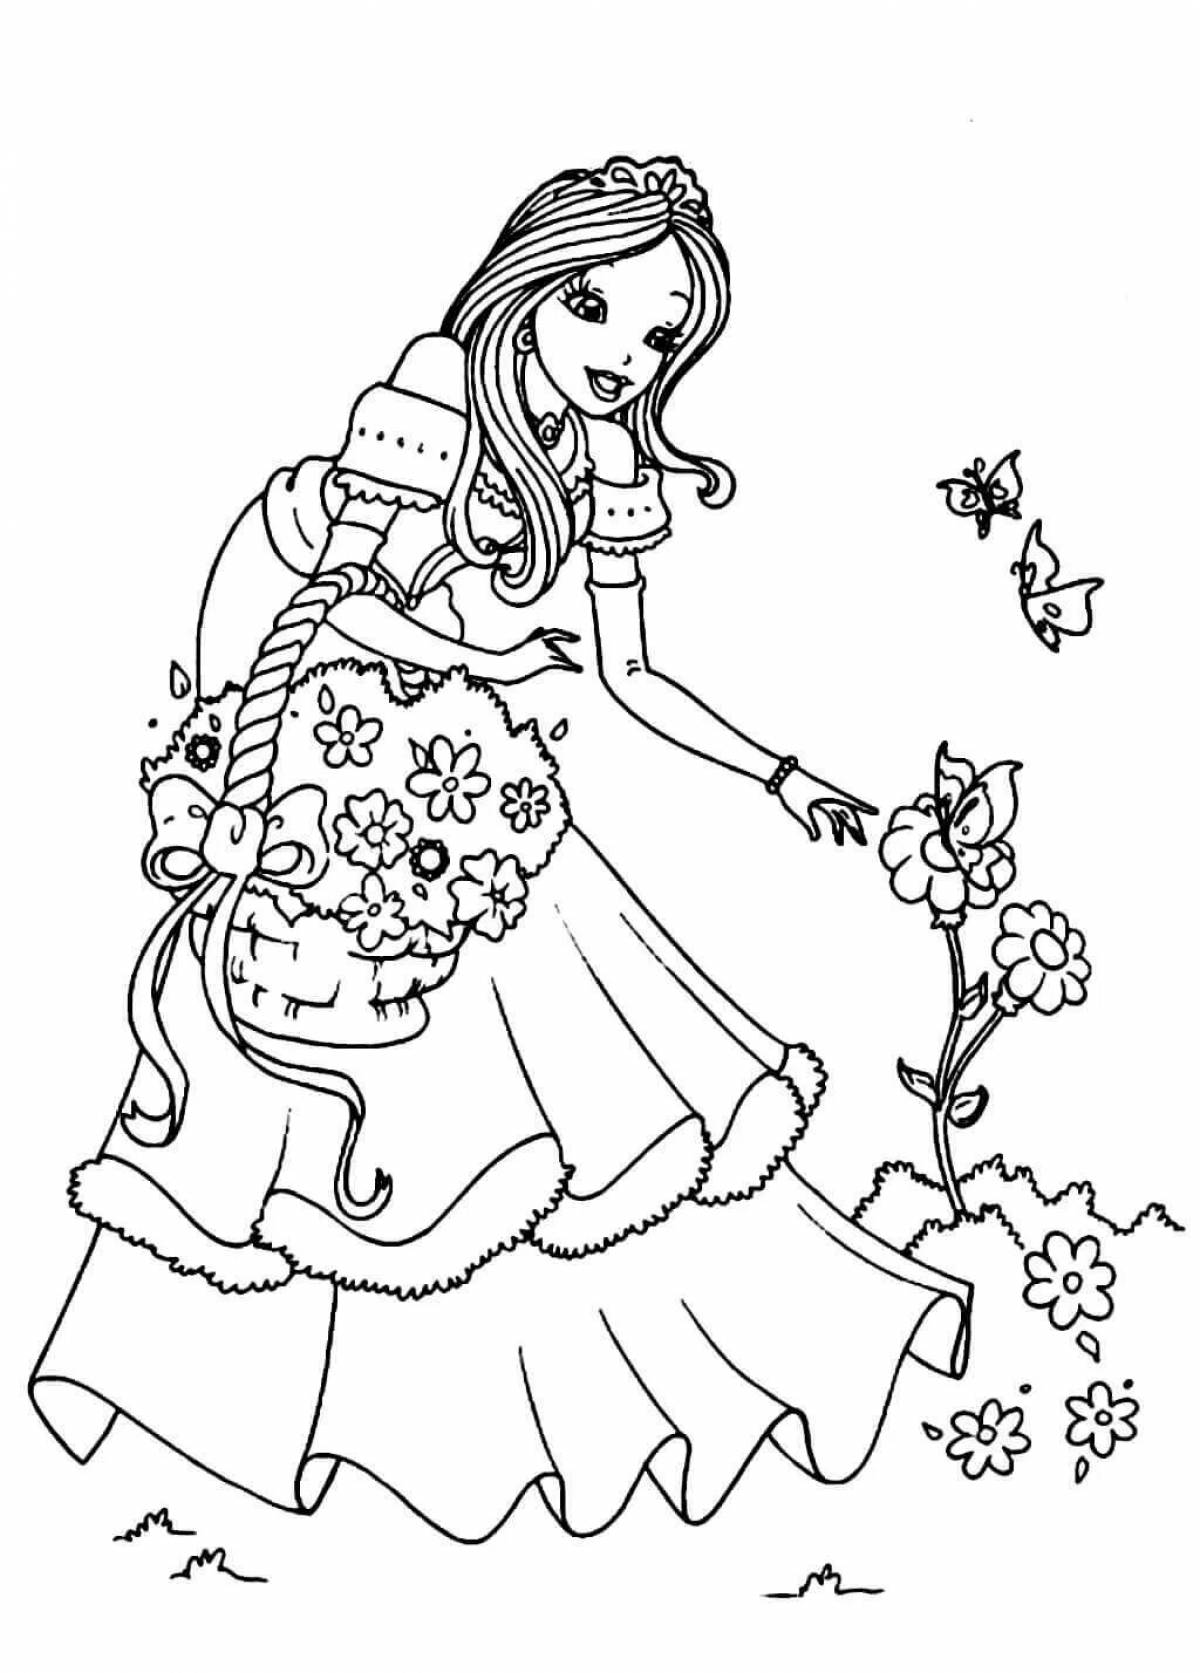 Мечтательные раскраски принцессы для девочек 7 лет